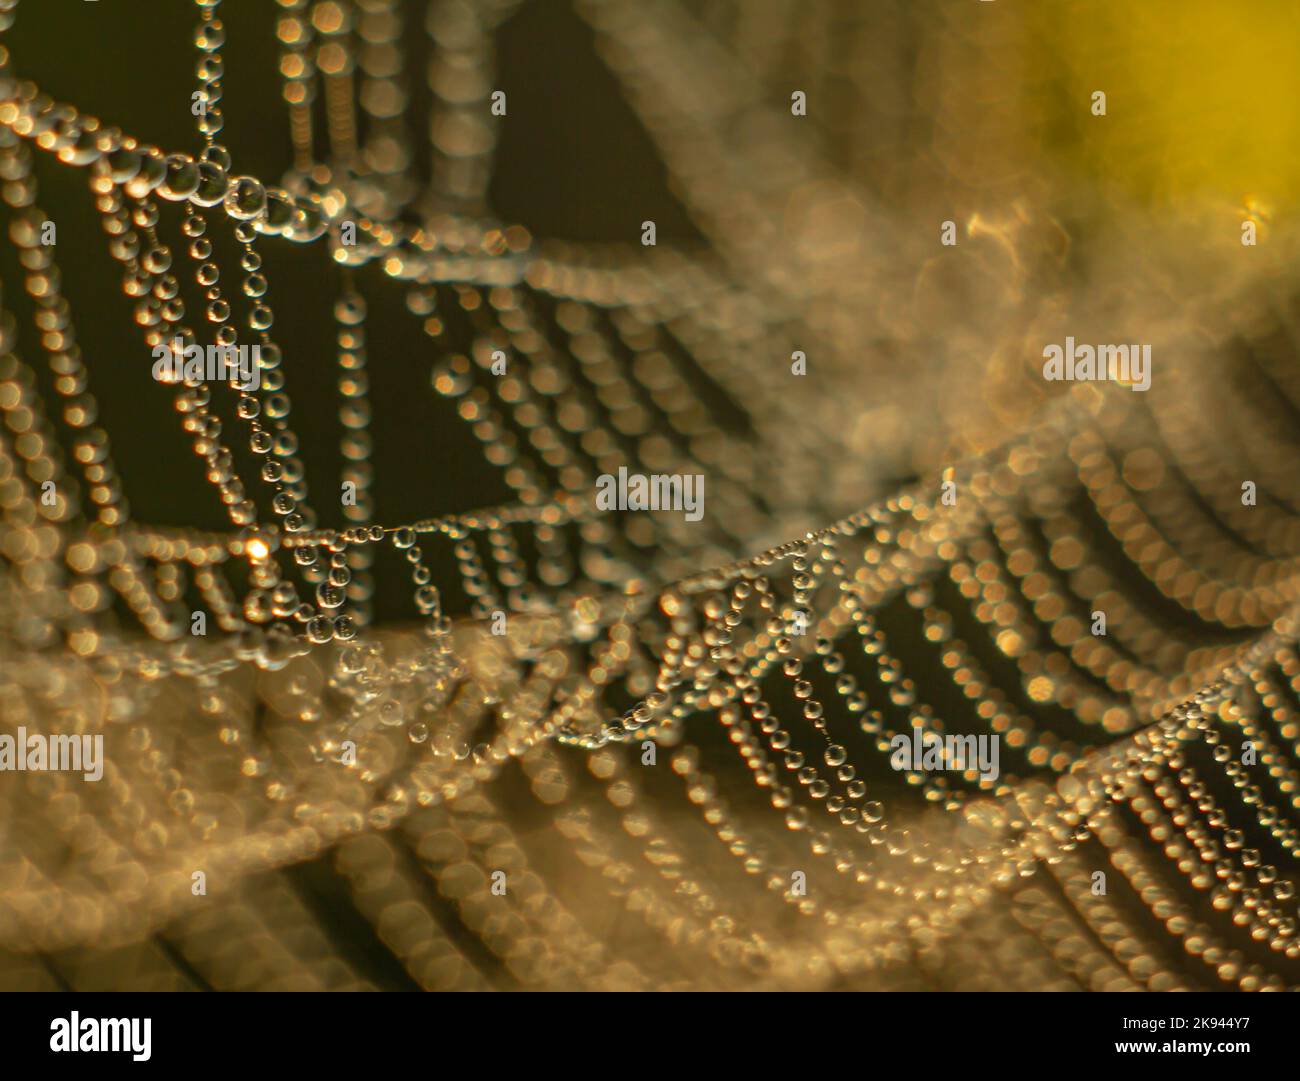 DroDrops of morning dew glisten on a cobweb against a dark backgroundps of morning dew glisten on the web Stock Photo